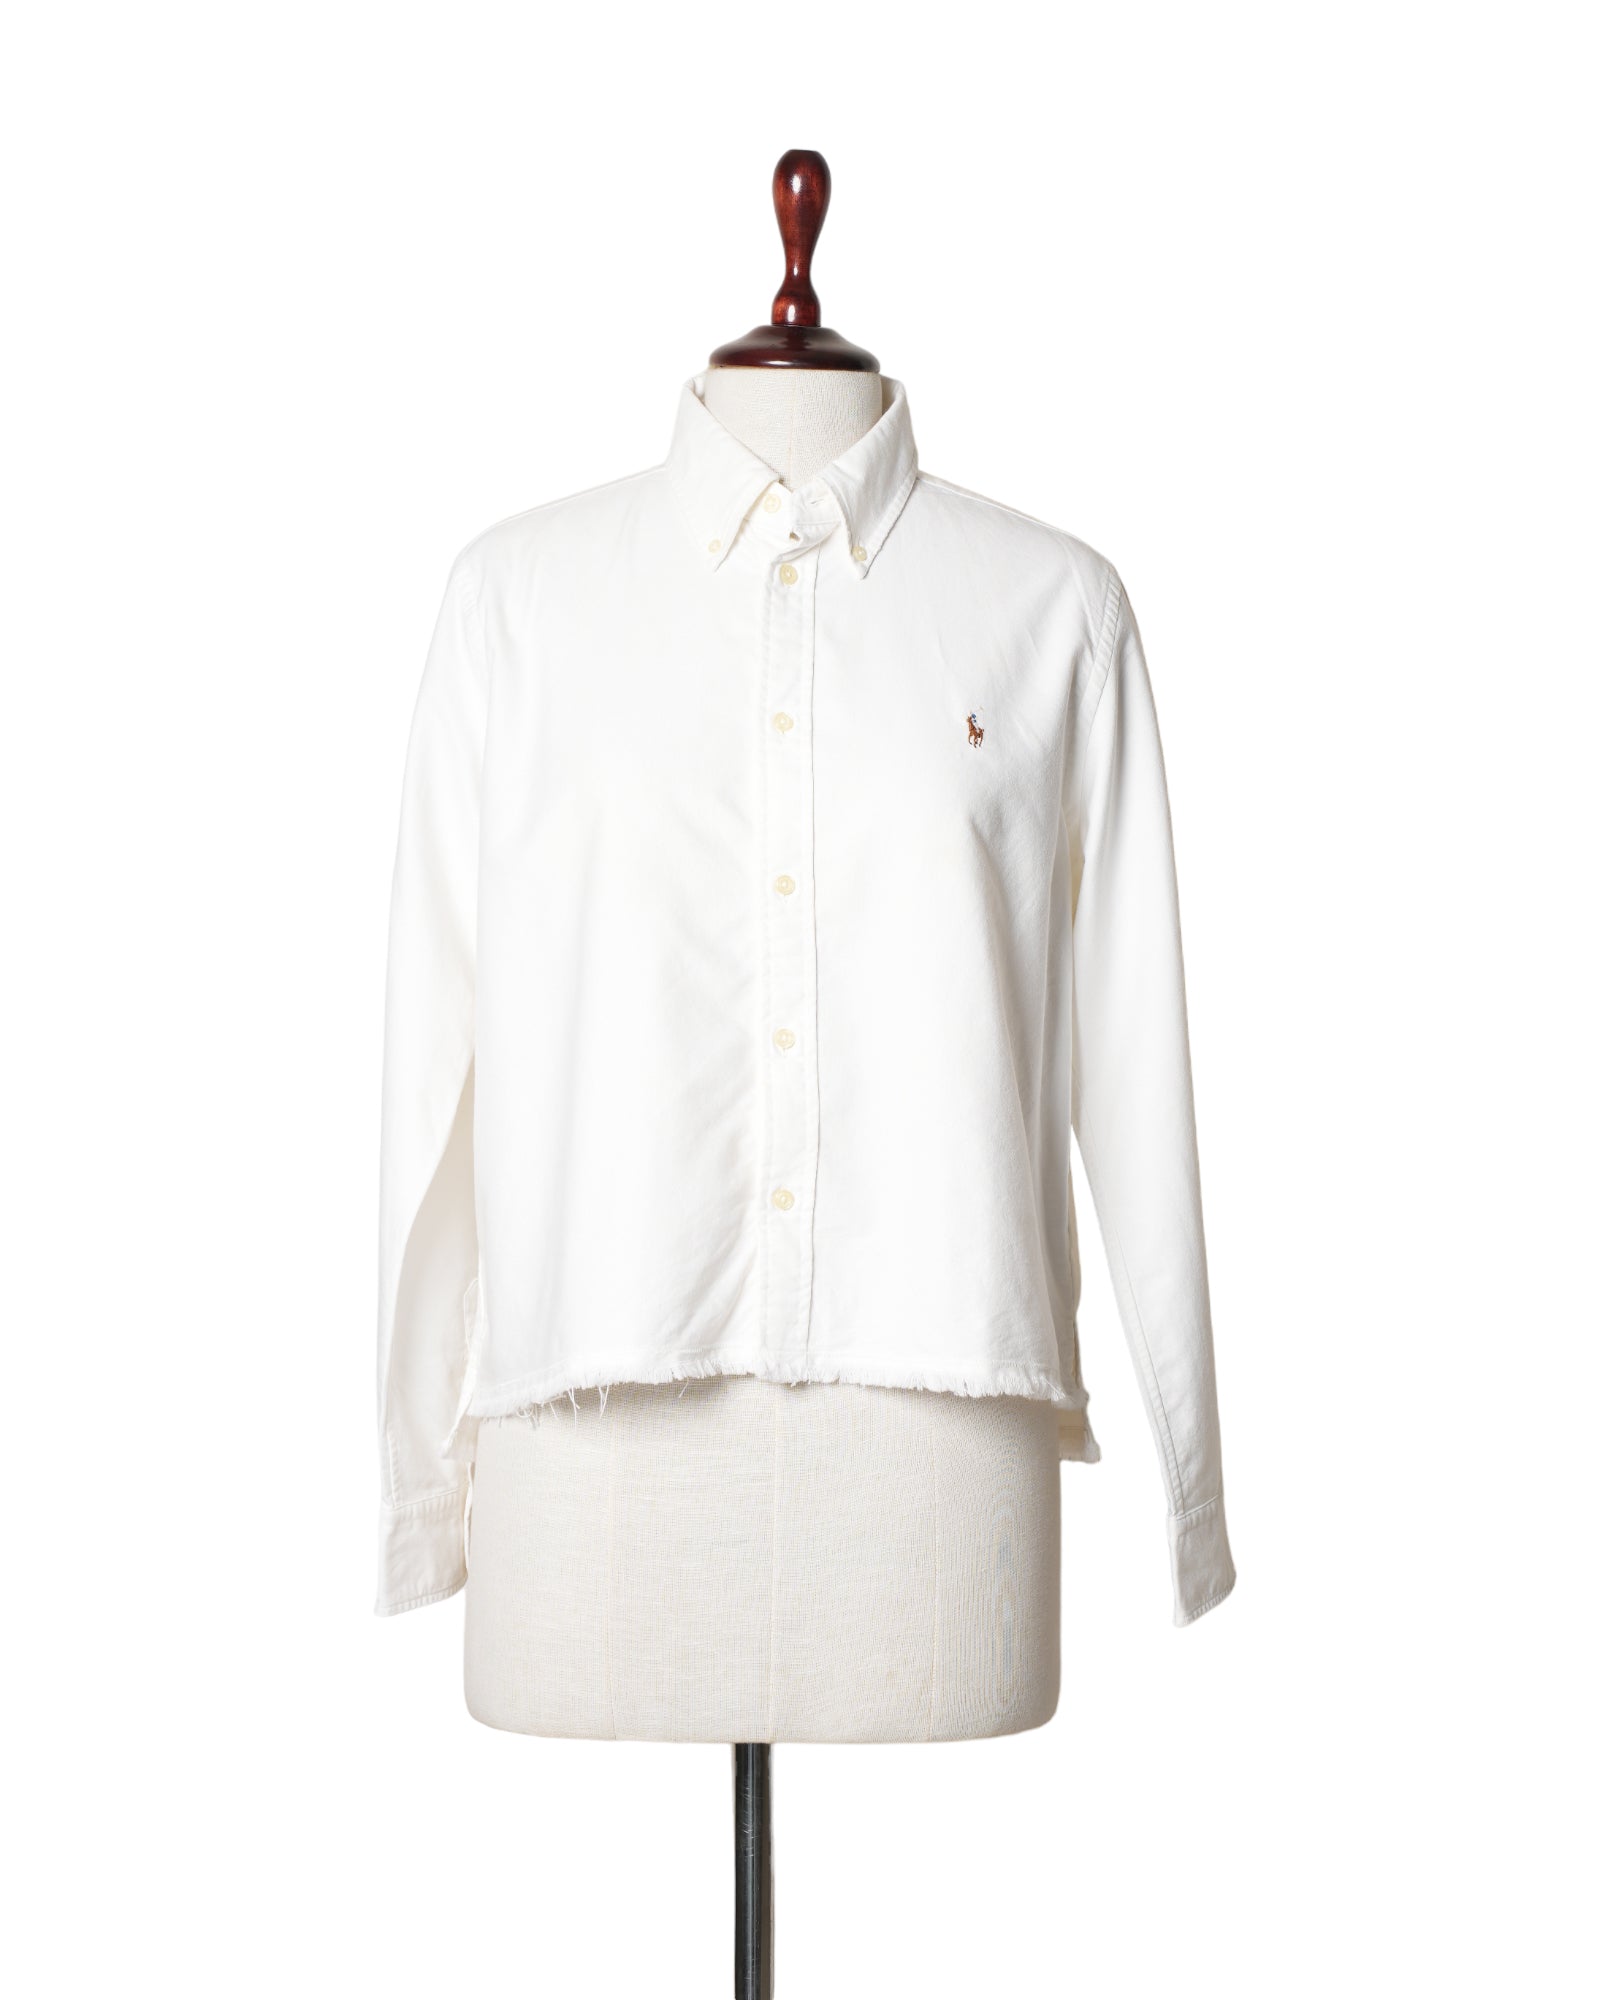 Lauren By Ralph Lauren White Long Sleeves Shirt